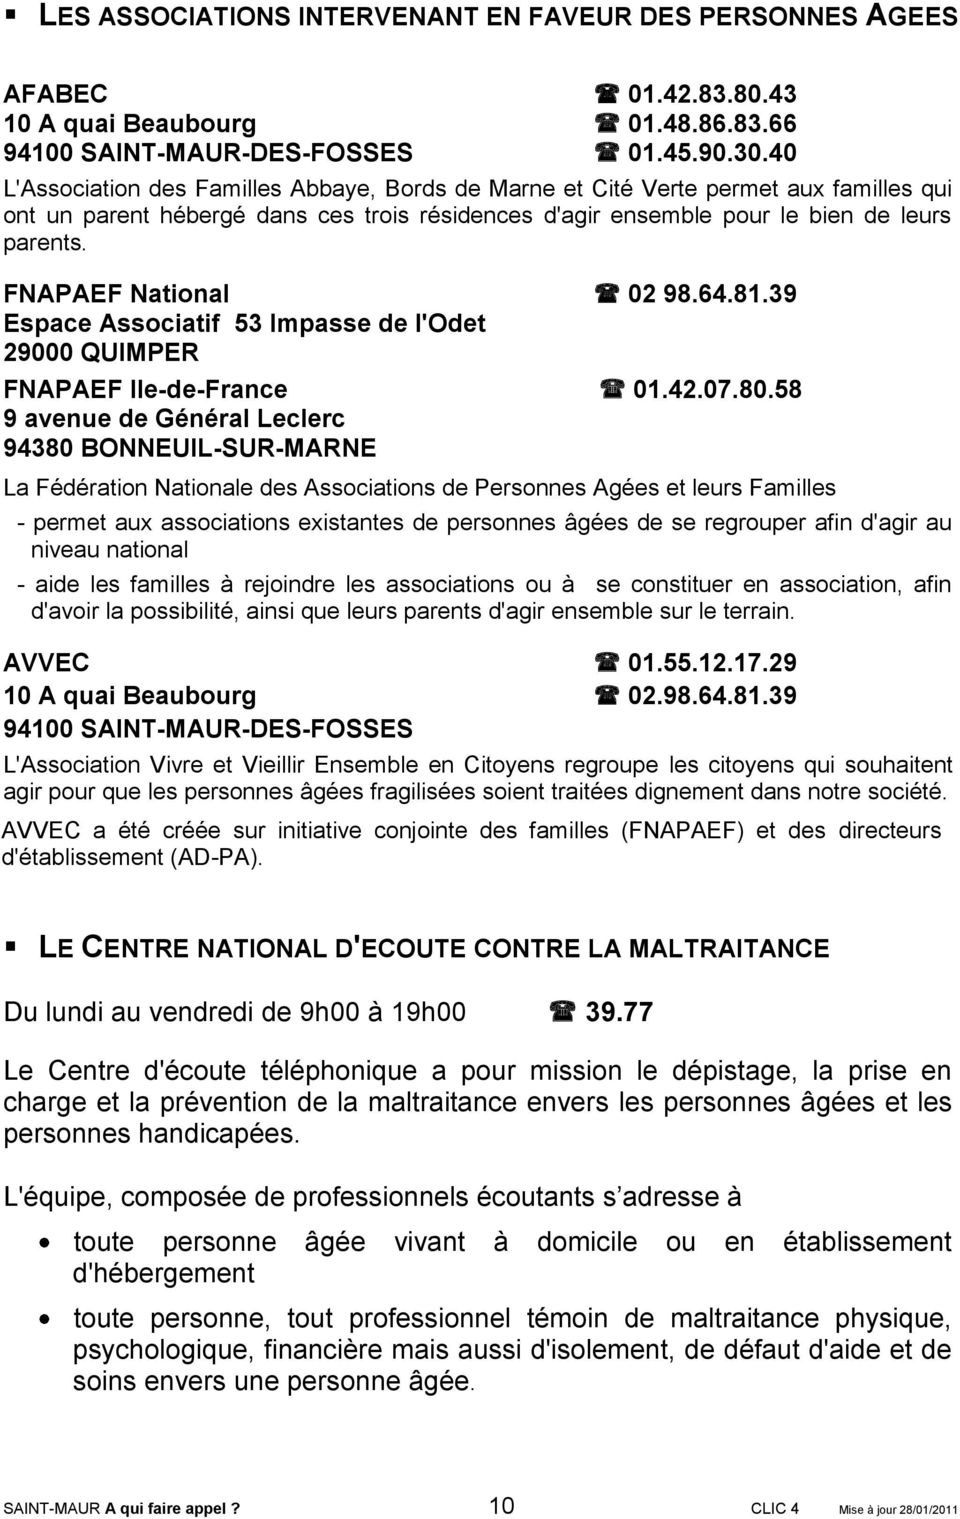 FNAPAEF National 02 98.64.81.39 Espace Associatif 53 Impasse de l'odet 29000 QUIMPER FNAPAEF Ile-de-France 01.42.07.80.